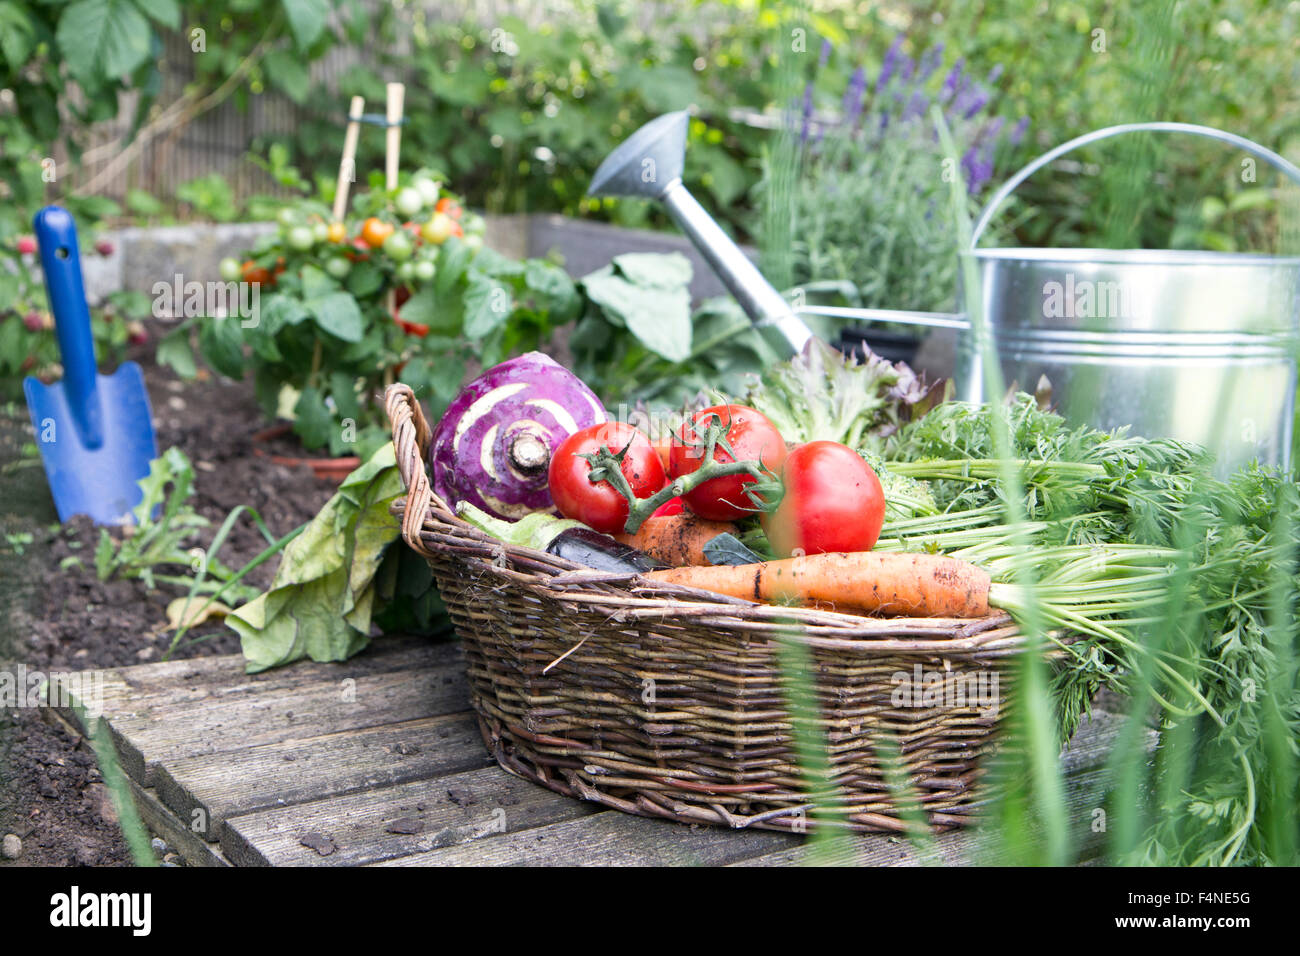 Basket full of organic vegetables Stock Photo